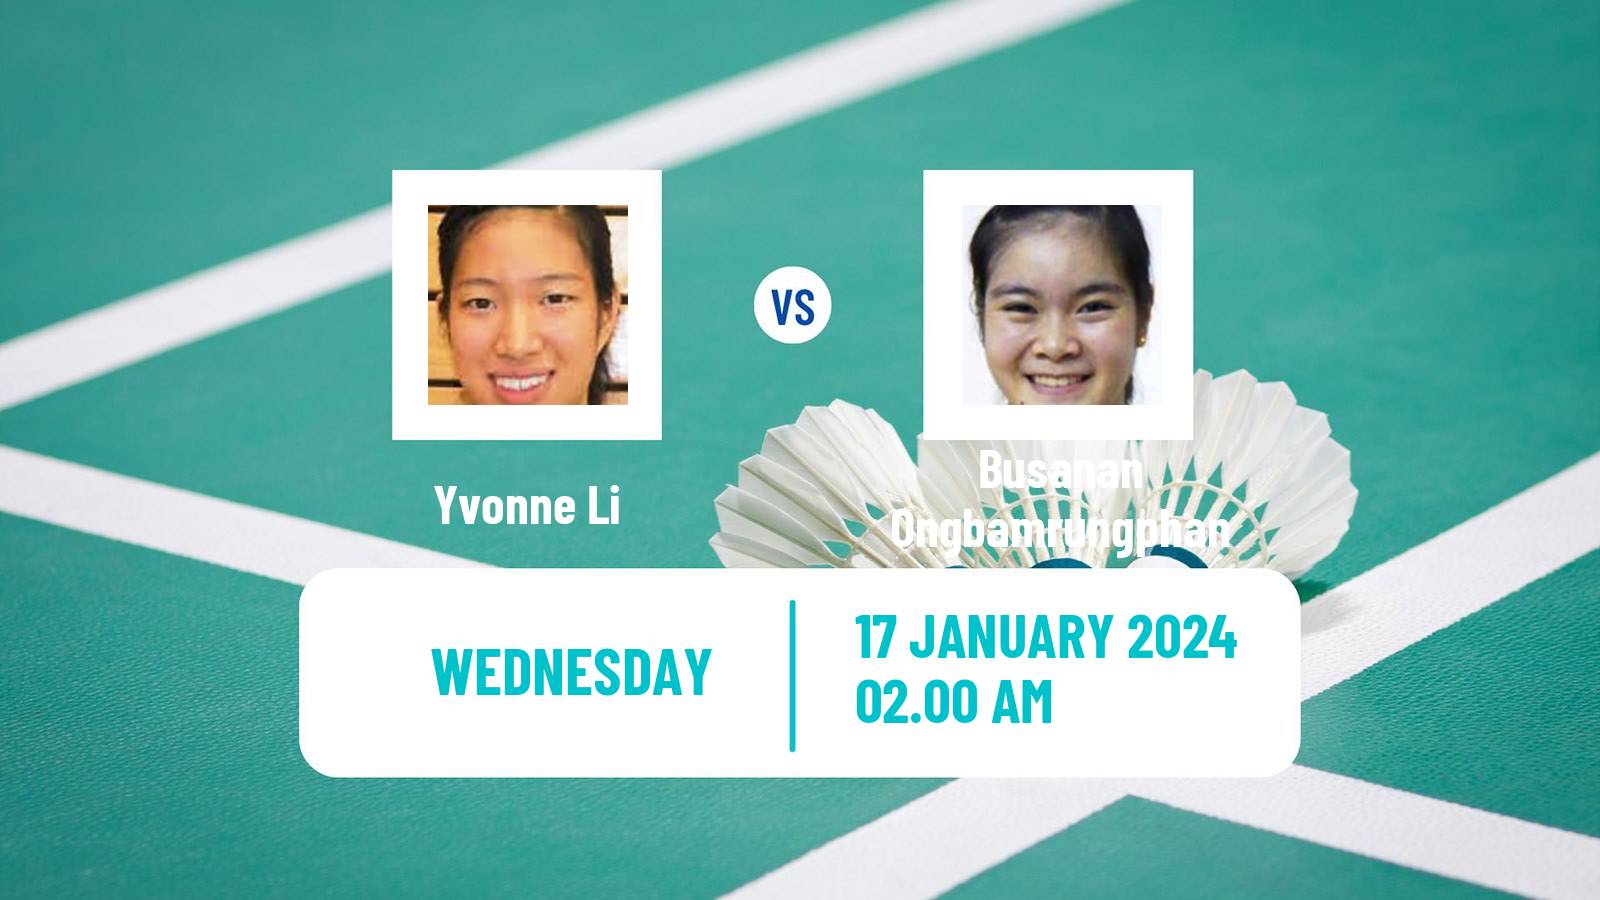 Badminton BWF World Tour India Open Women Yvonne Li - Busanan Ongbamrungphan